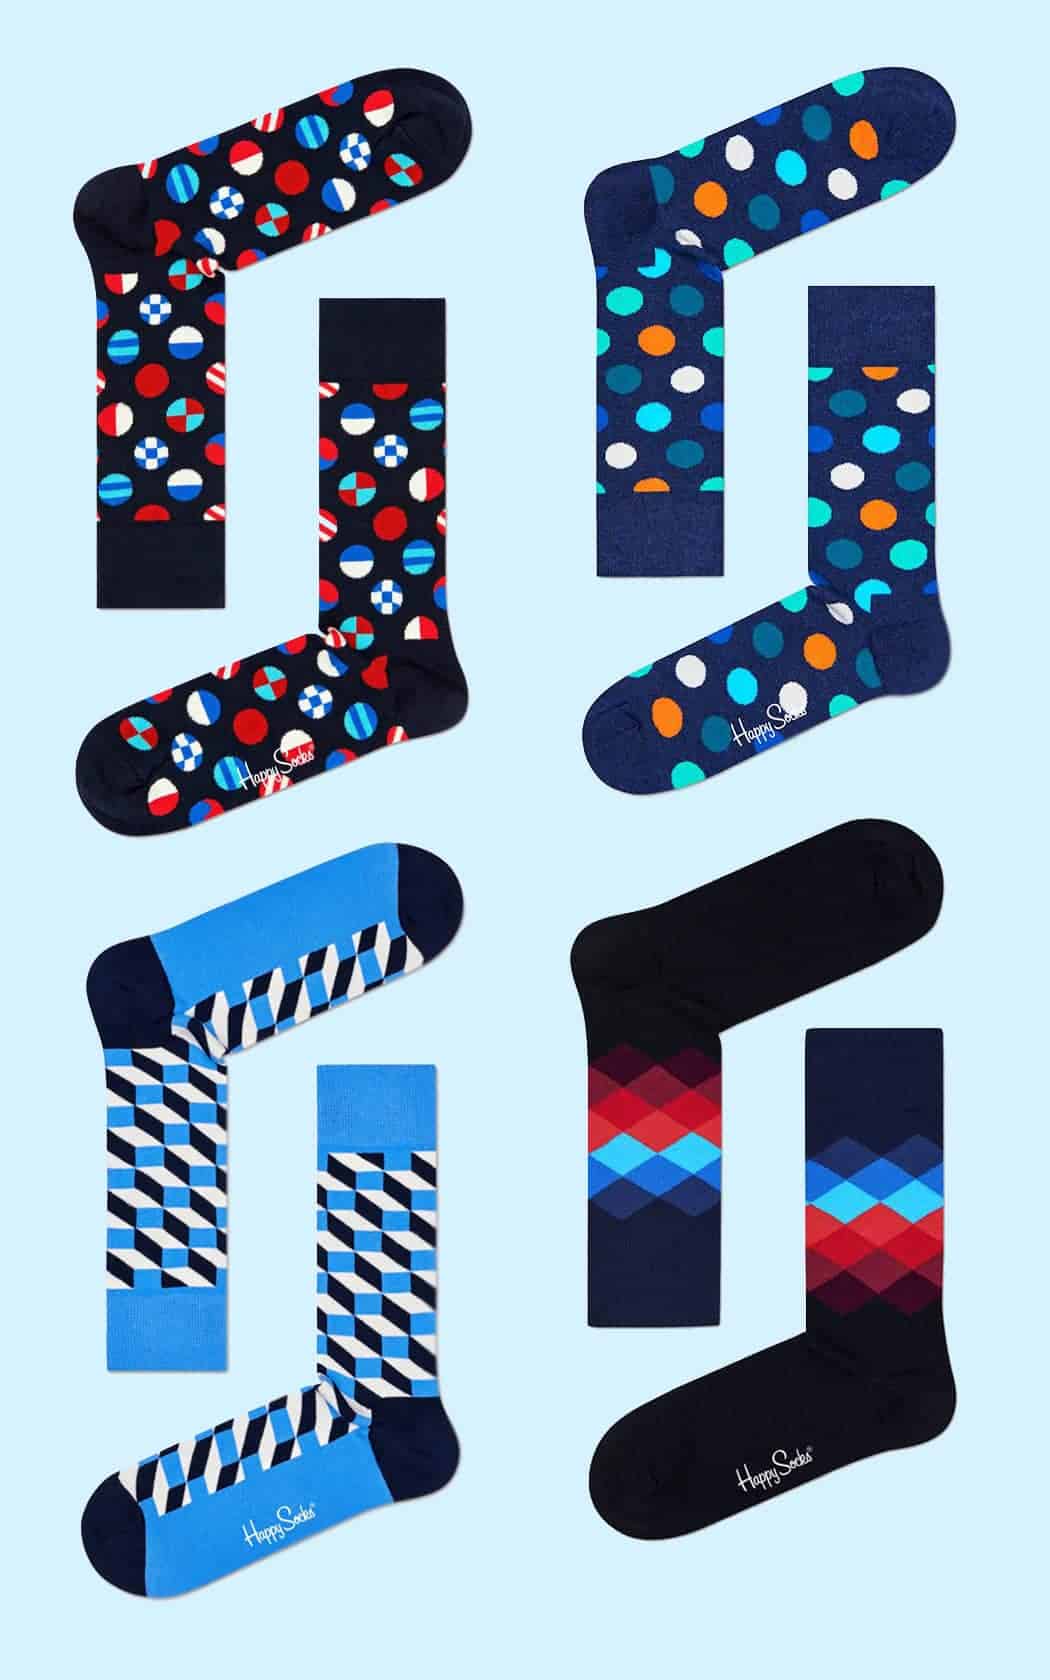 Leuke sokken - 5 x inspiratie voor toffe sokken - Geometrie en patronen - door Laurens M - via AGMJ.be